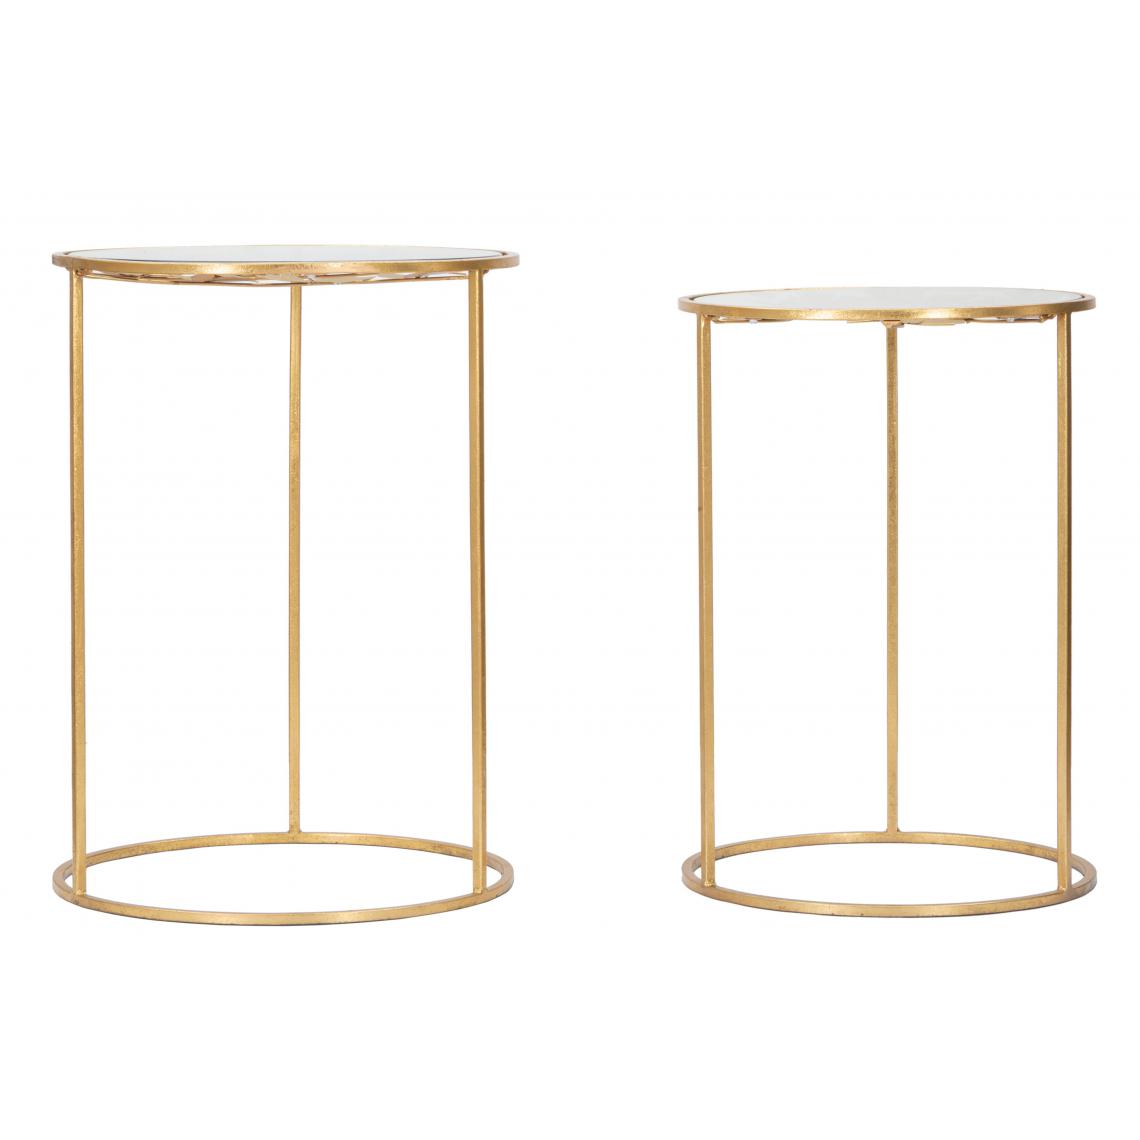 Alter - Paire de tables rondes, structure en métal doré, plateau en verre, couleur or - Porte-revues